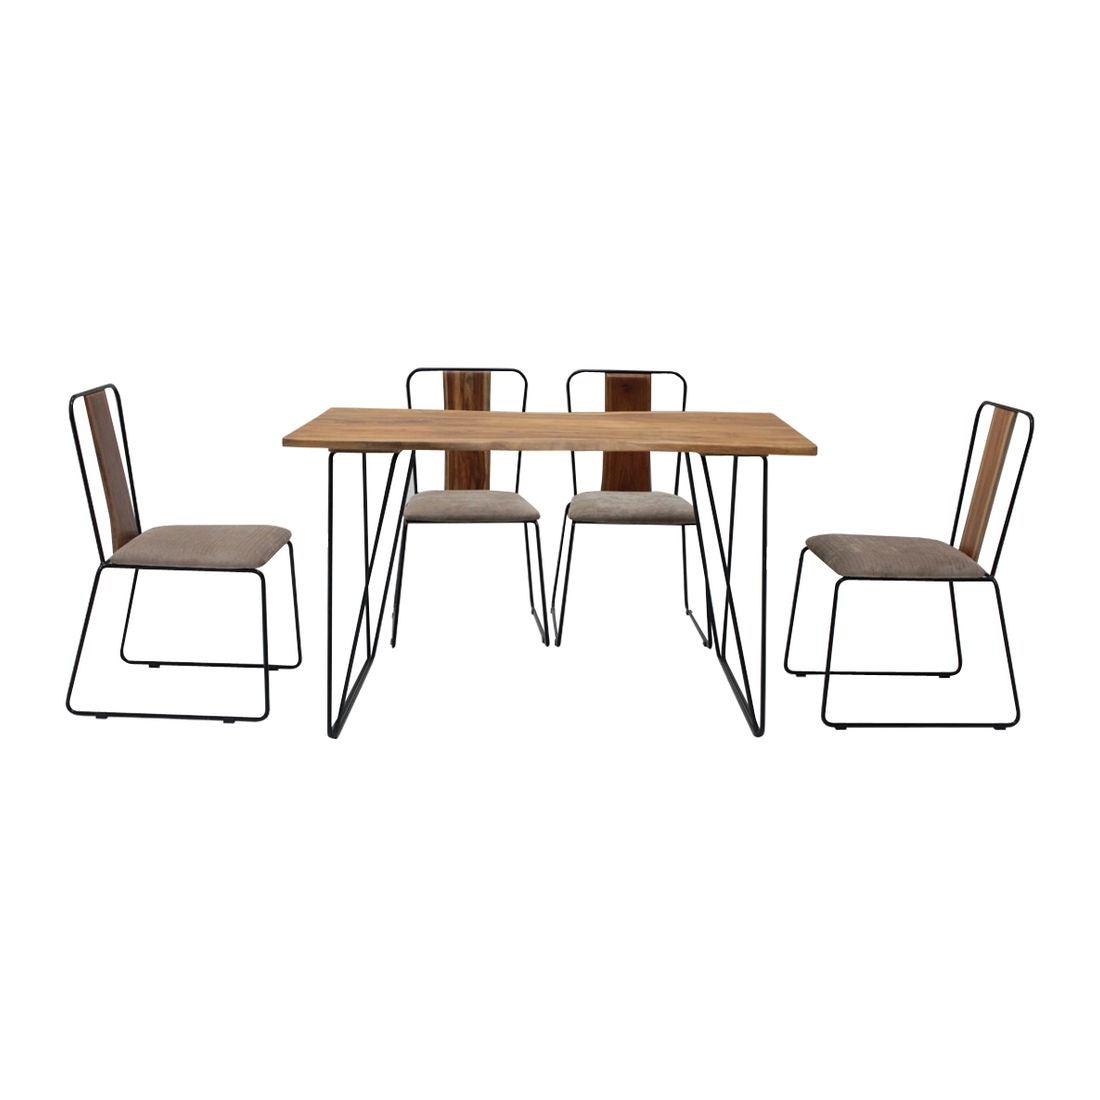 โต๊ะทานอาหาร โต๊ะอาหารขาเหล็กท๊อปไม้ รุ่น Fer สีสีลายไม้ธรรมชาติ-SB Design Square